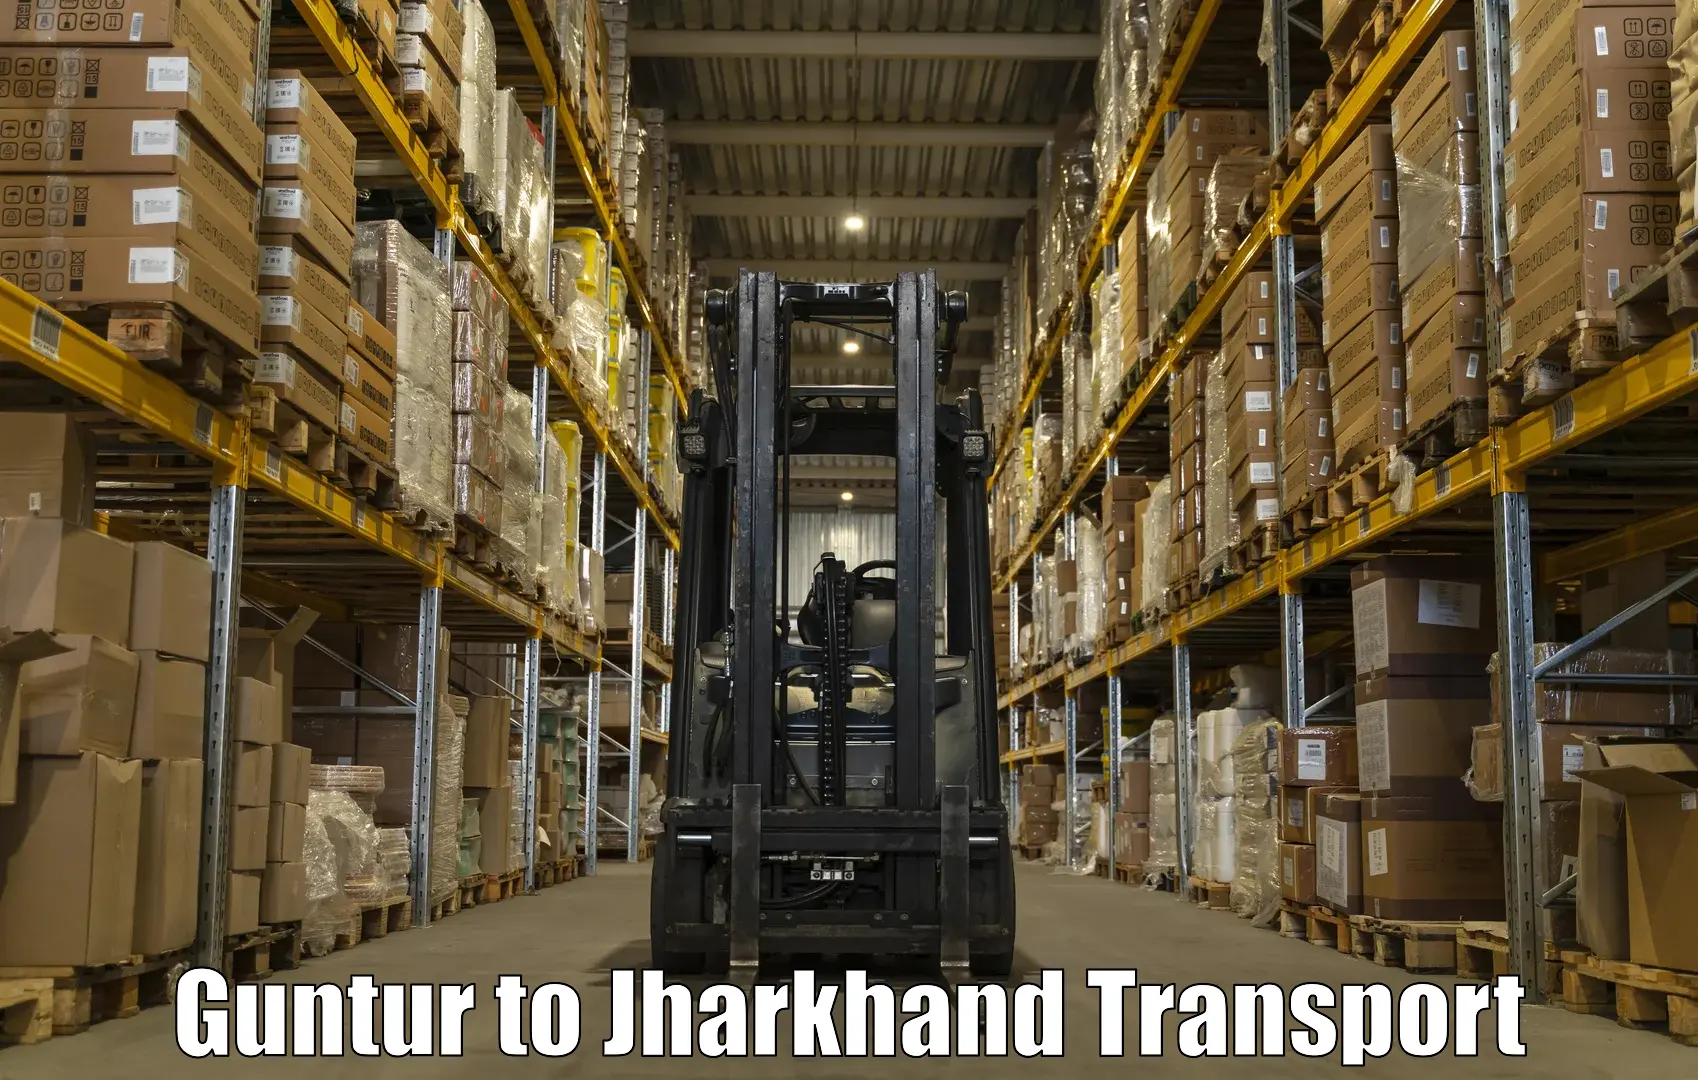 Online transport service Guntur to Chandankiyari